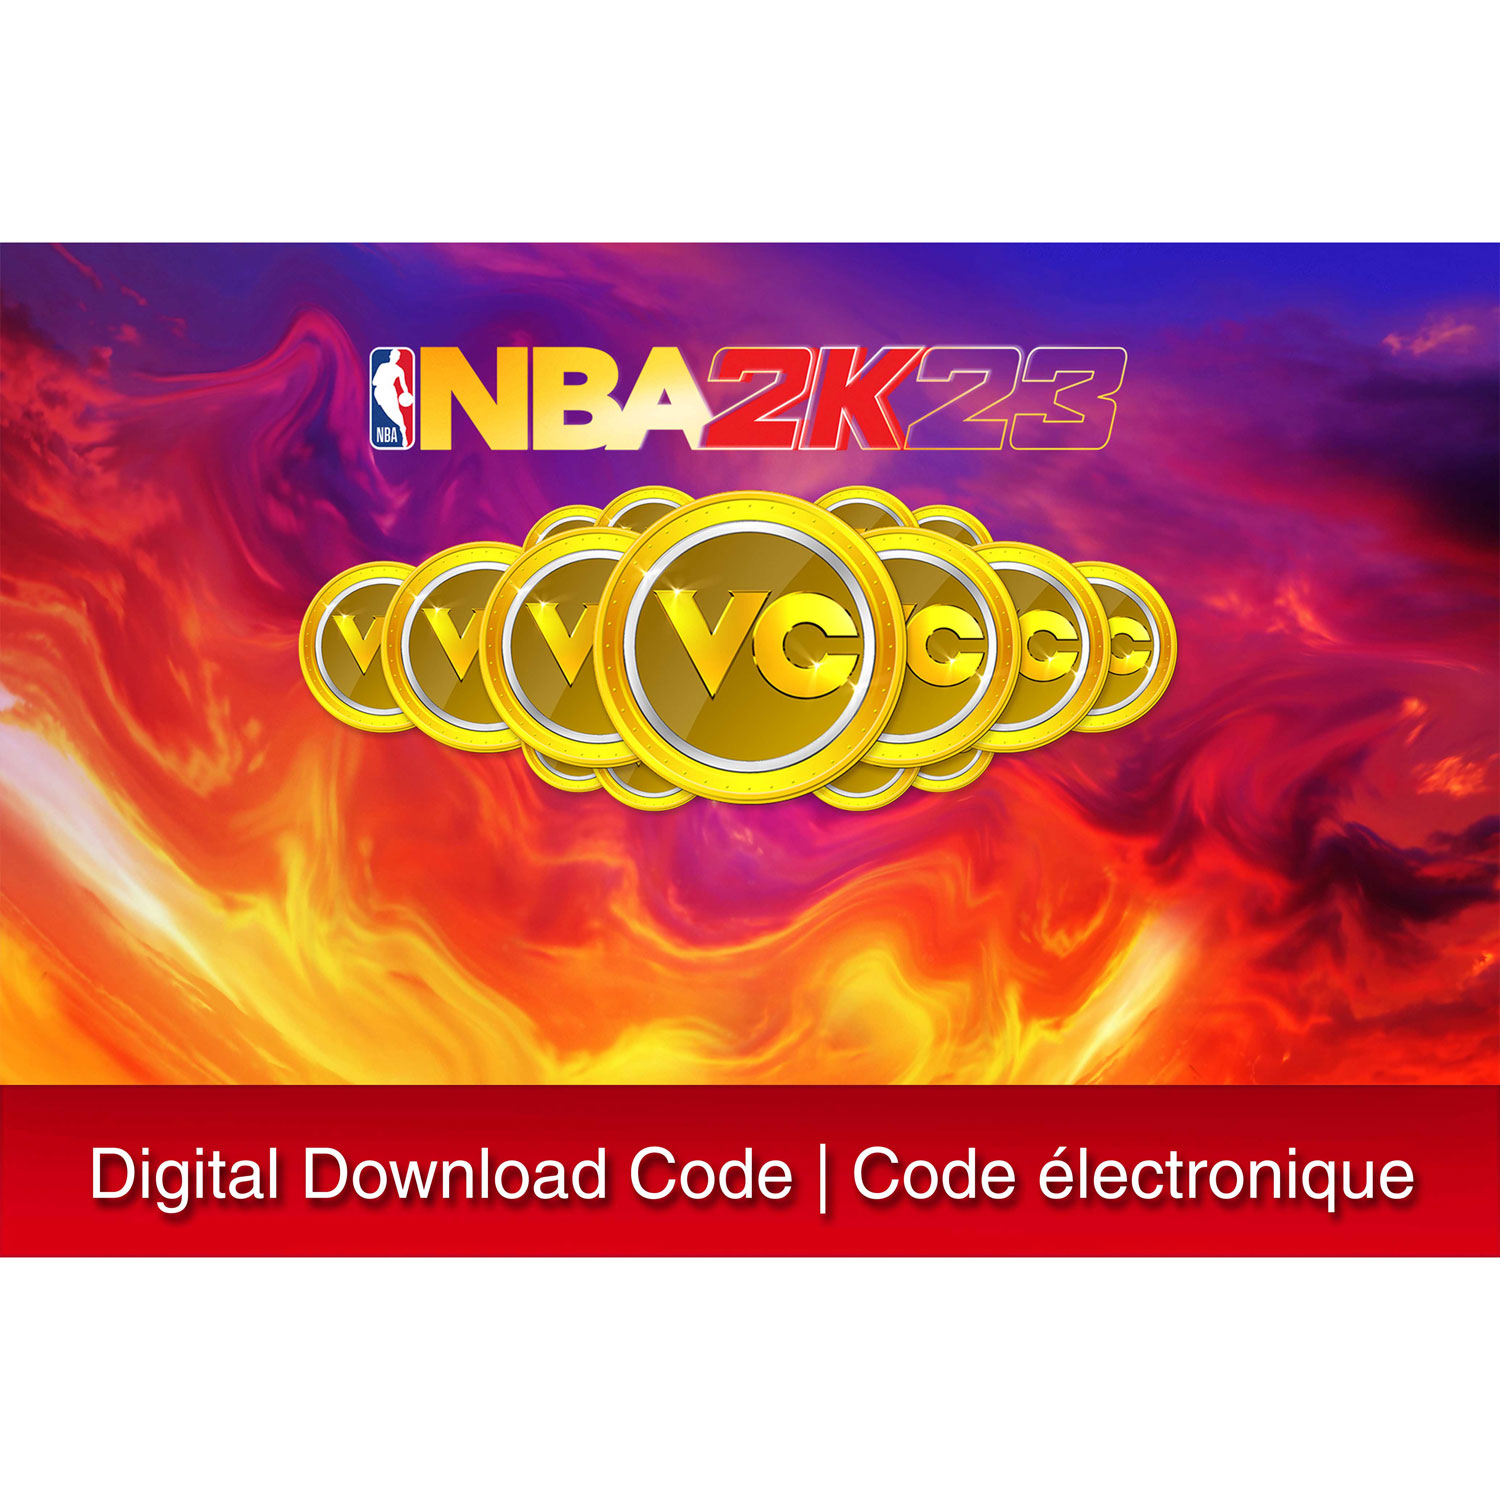 NBA 2K23 - 75,000 VC (Switch) - Digital Download